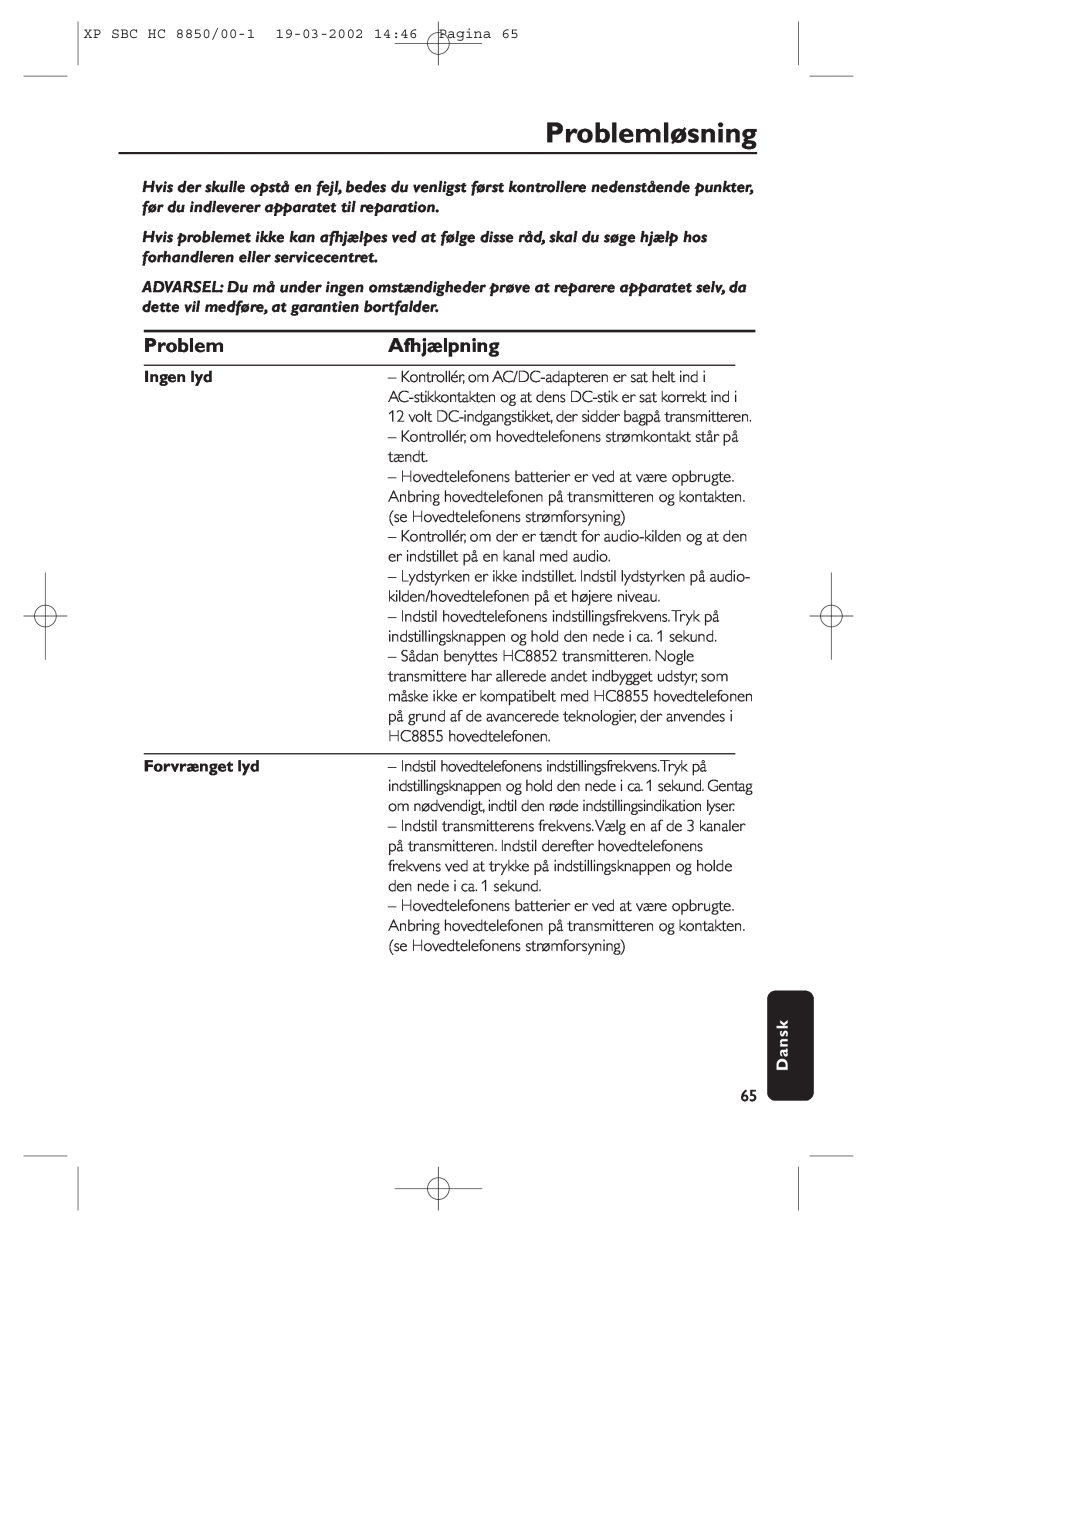 Philips HC8850 manual Problemløsning, Afhjælpning, Ingen lyd, Forvrænget lyd, Dansk 